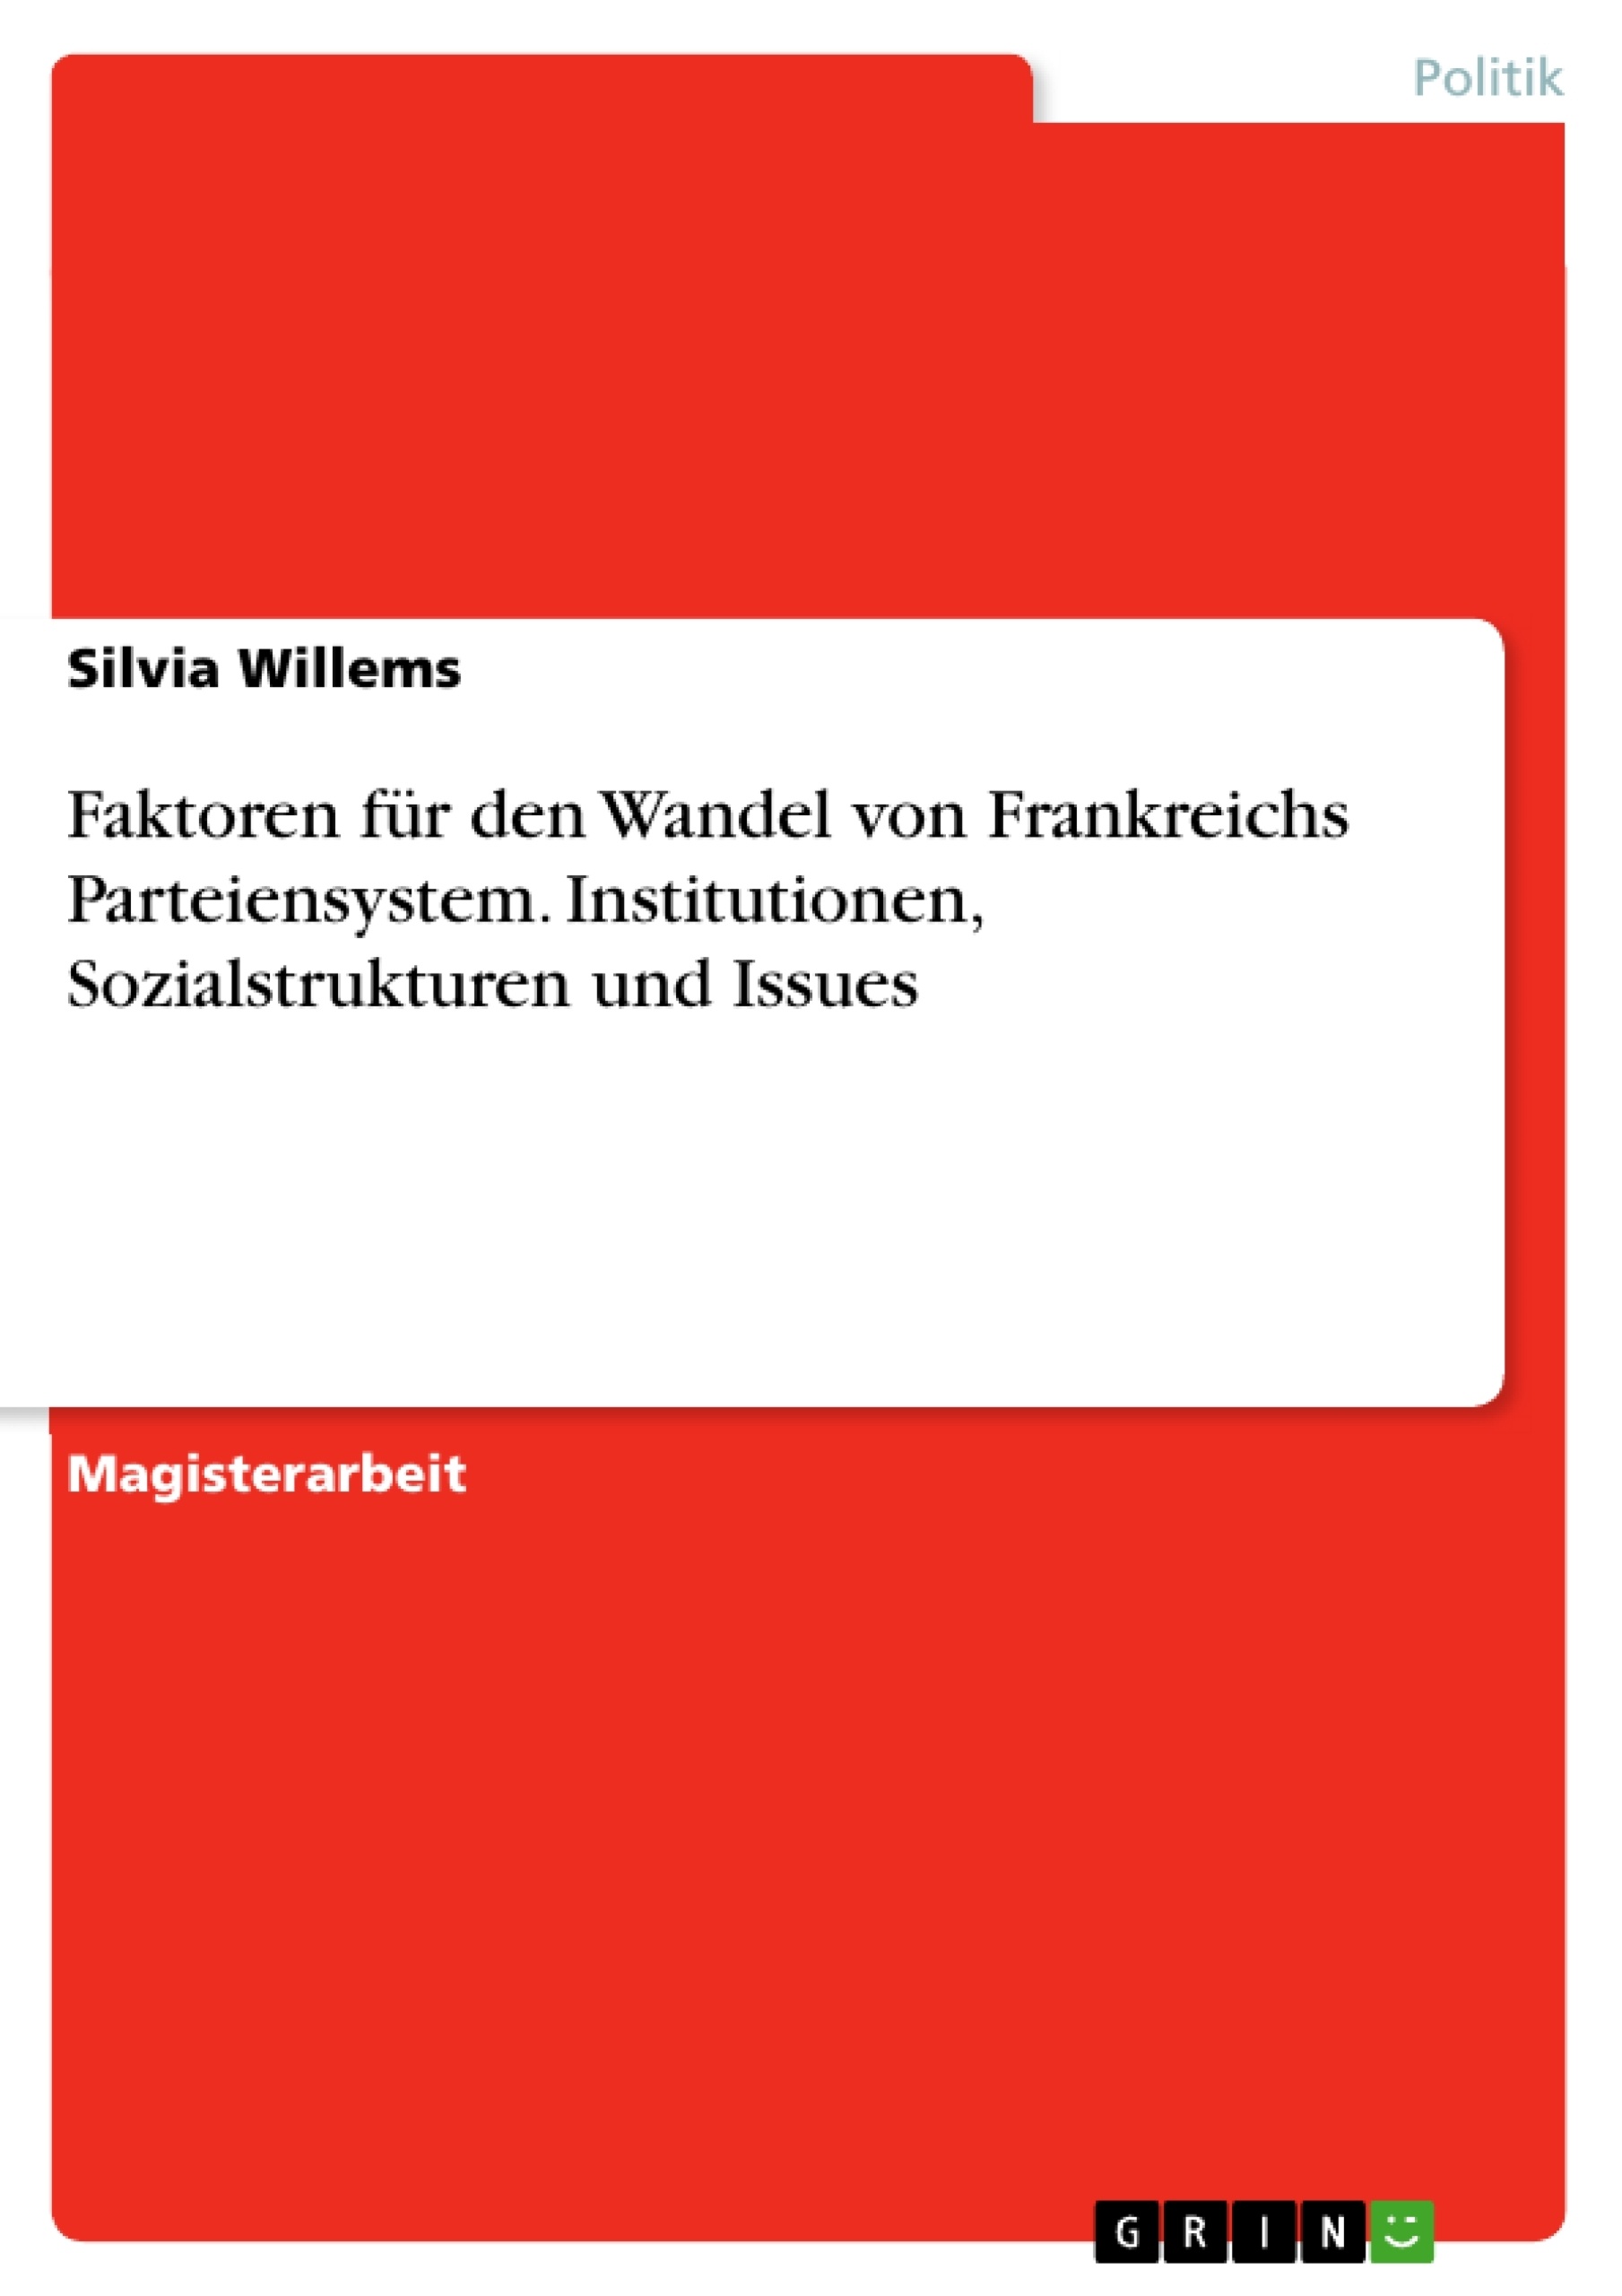 Titel: Faktoren für den Wandel von Frankreichs Parteiensystem. Institutionen, Sozialstrukturen und Issues